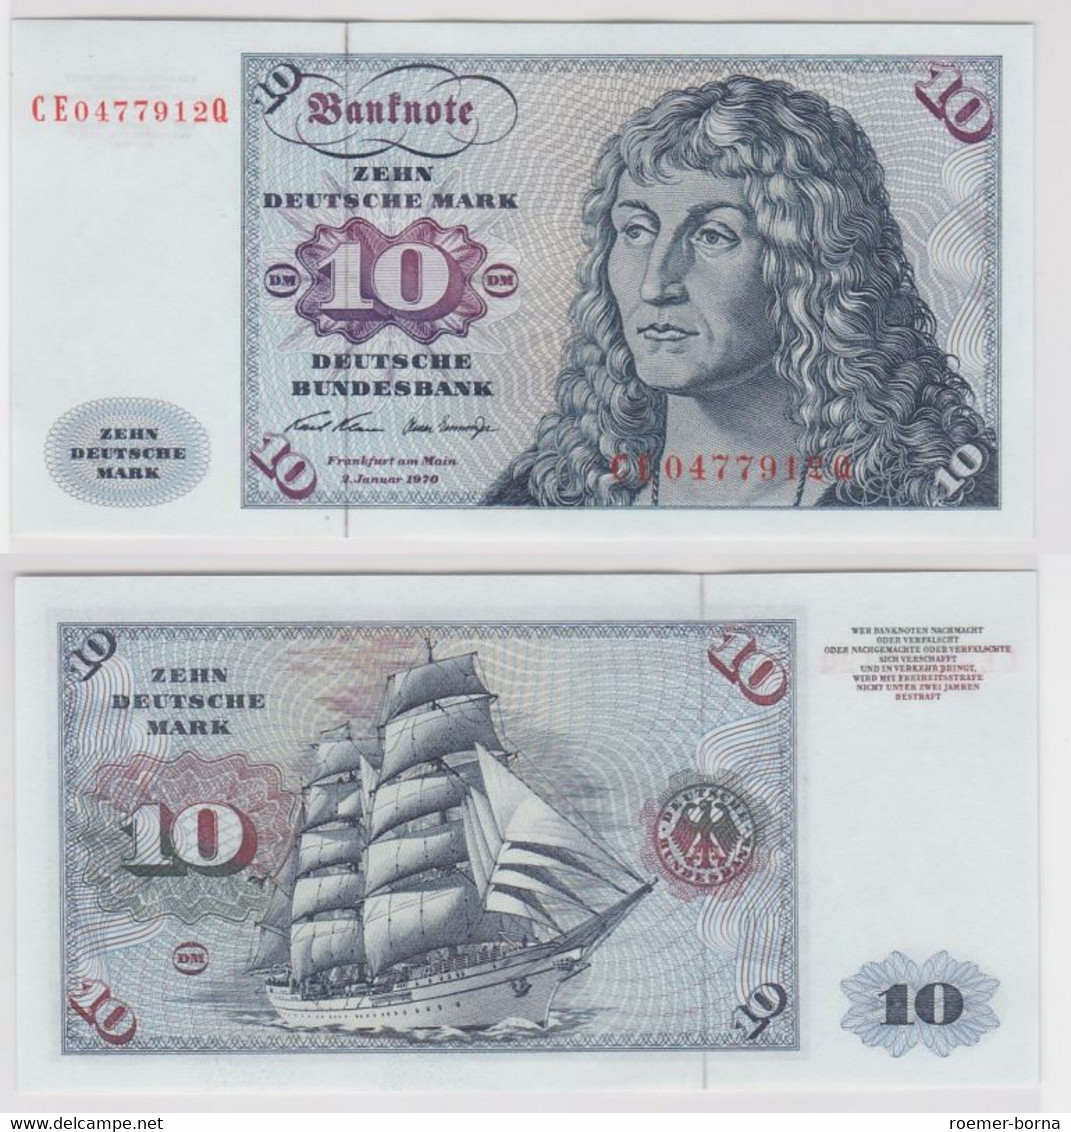 T146364 Banknote 10 DM Deutsche Mark Ro. 270b Schein 2.Jan. 1970 KN CE 0477912 Q - 10 Deutsche Mark